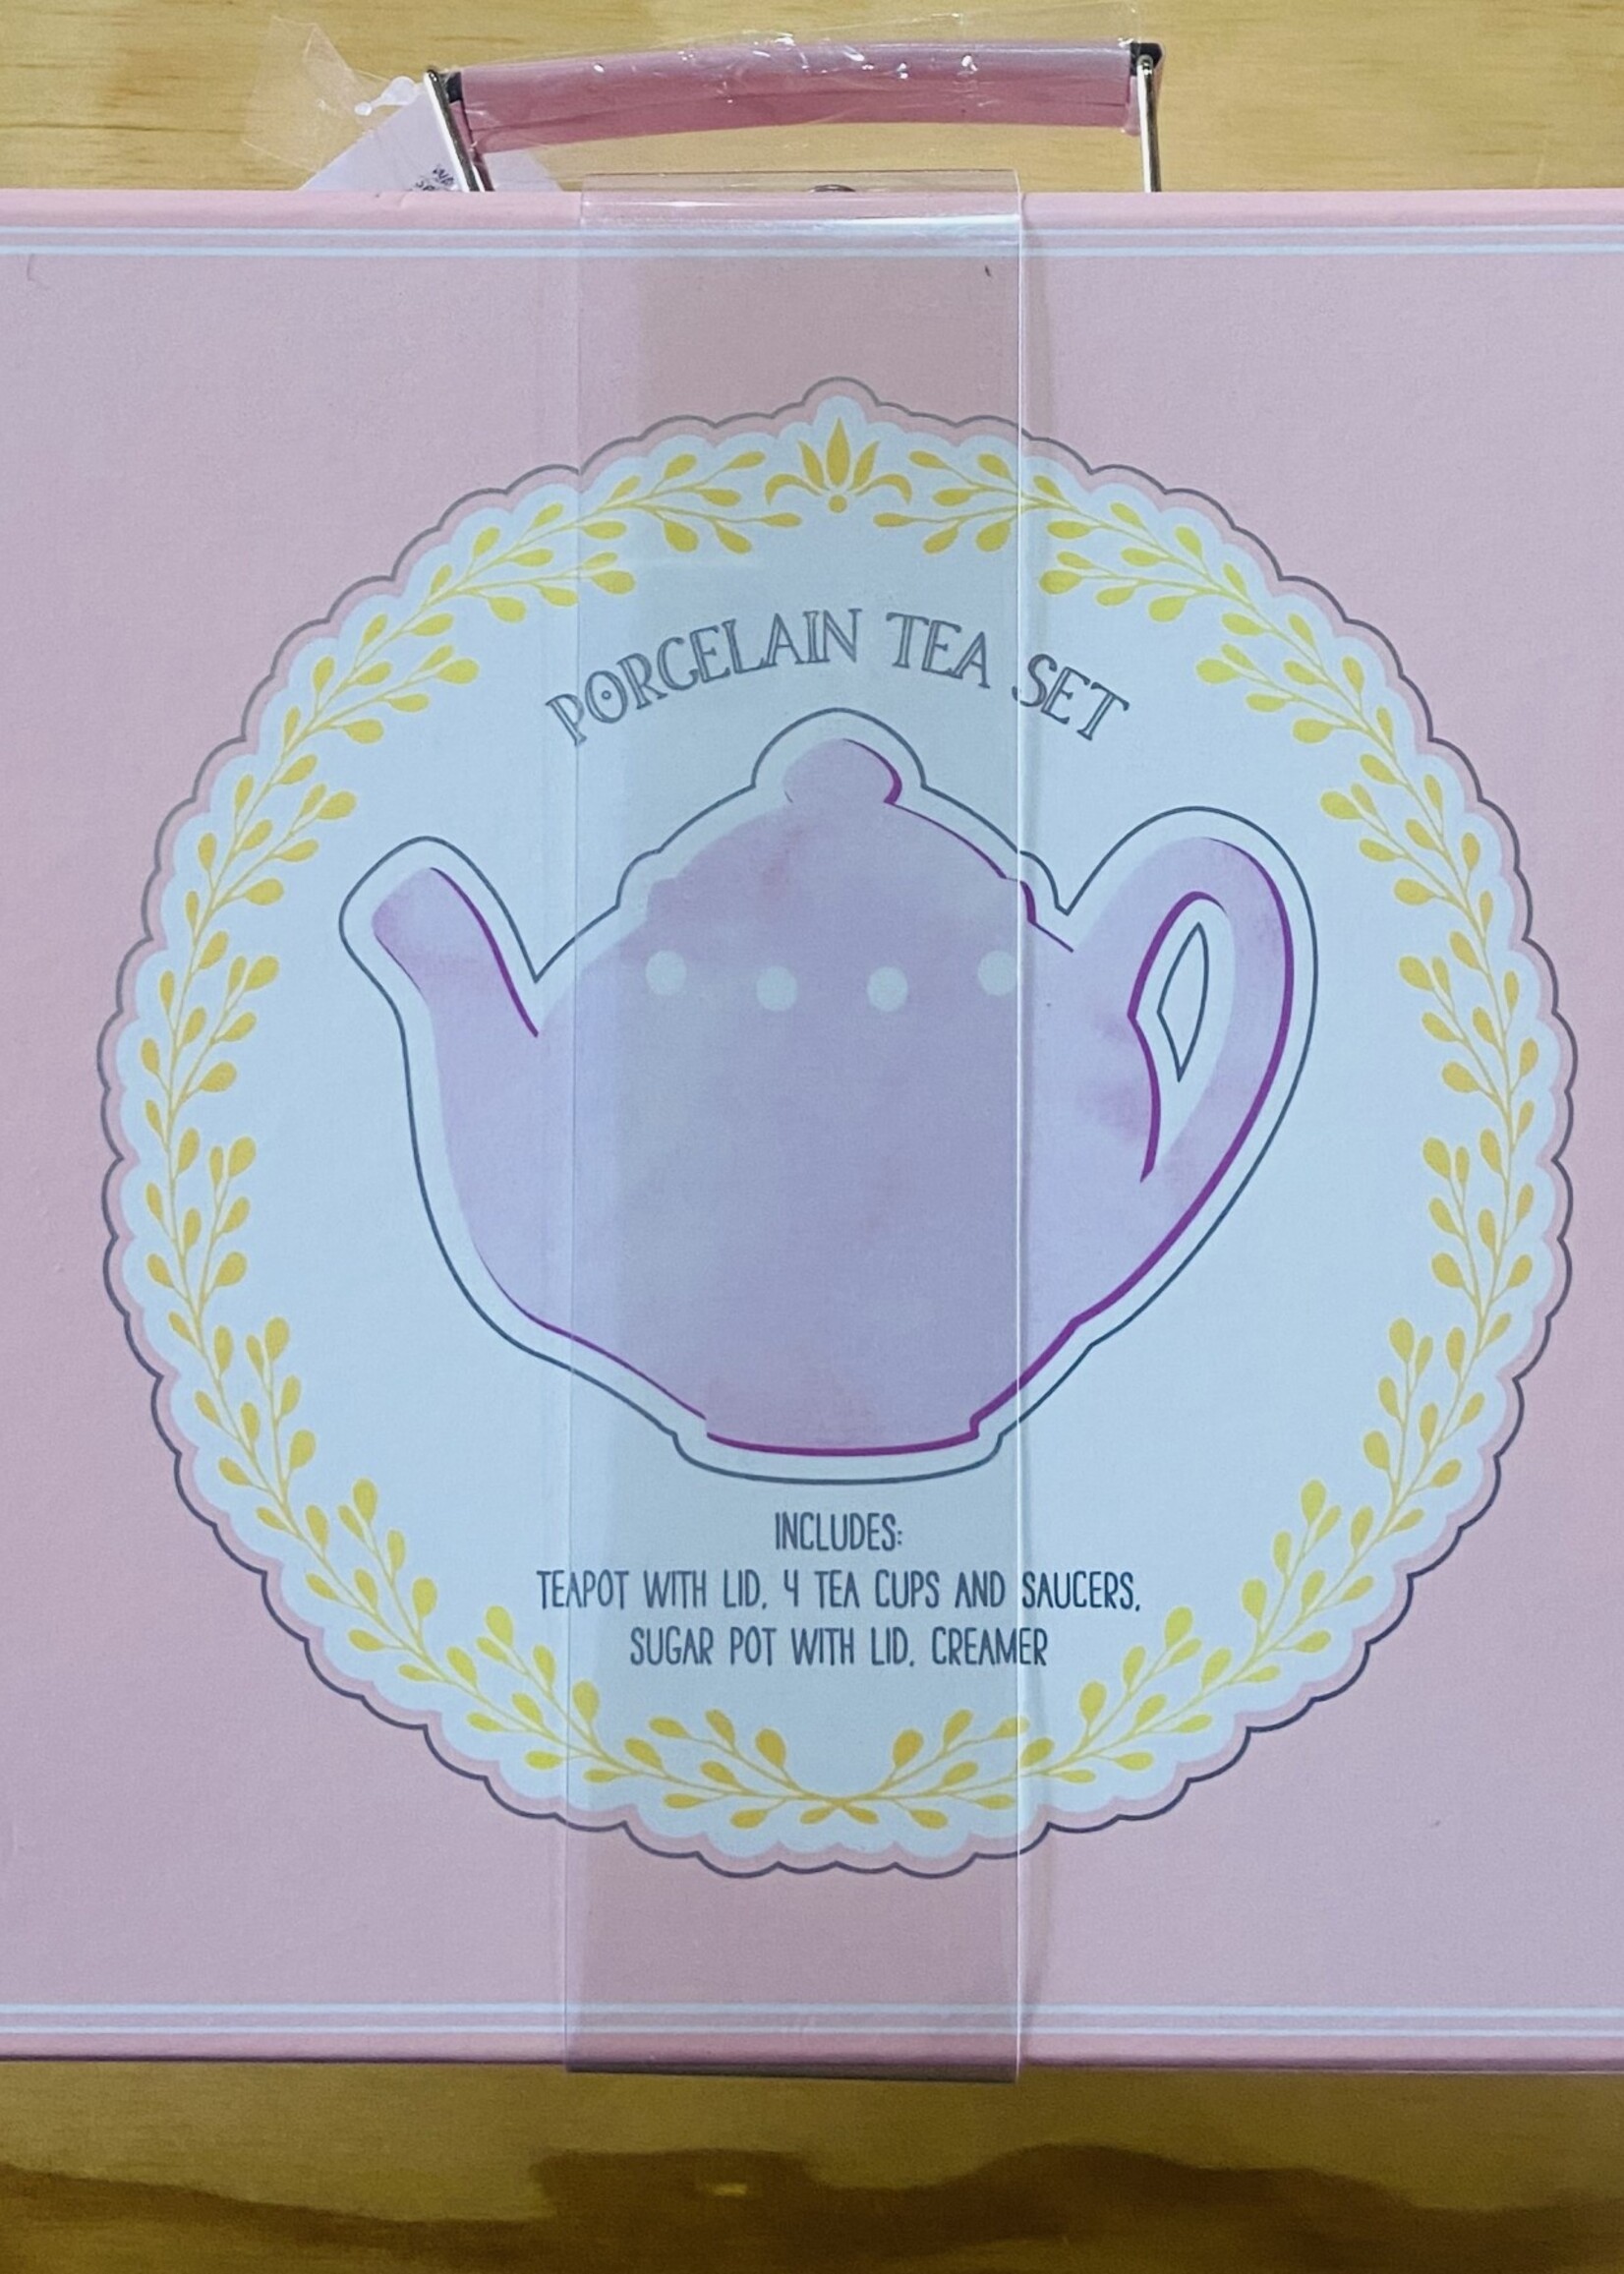 Porcelain Tea Set - Pink